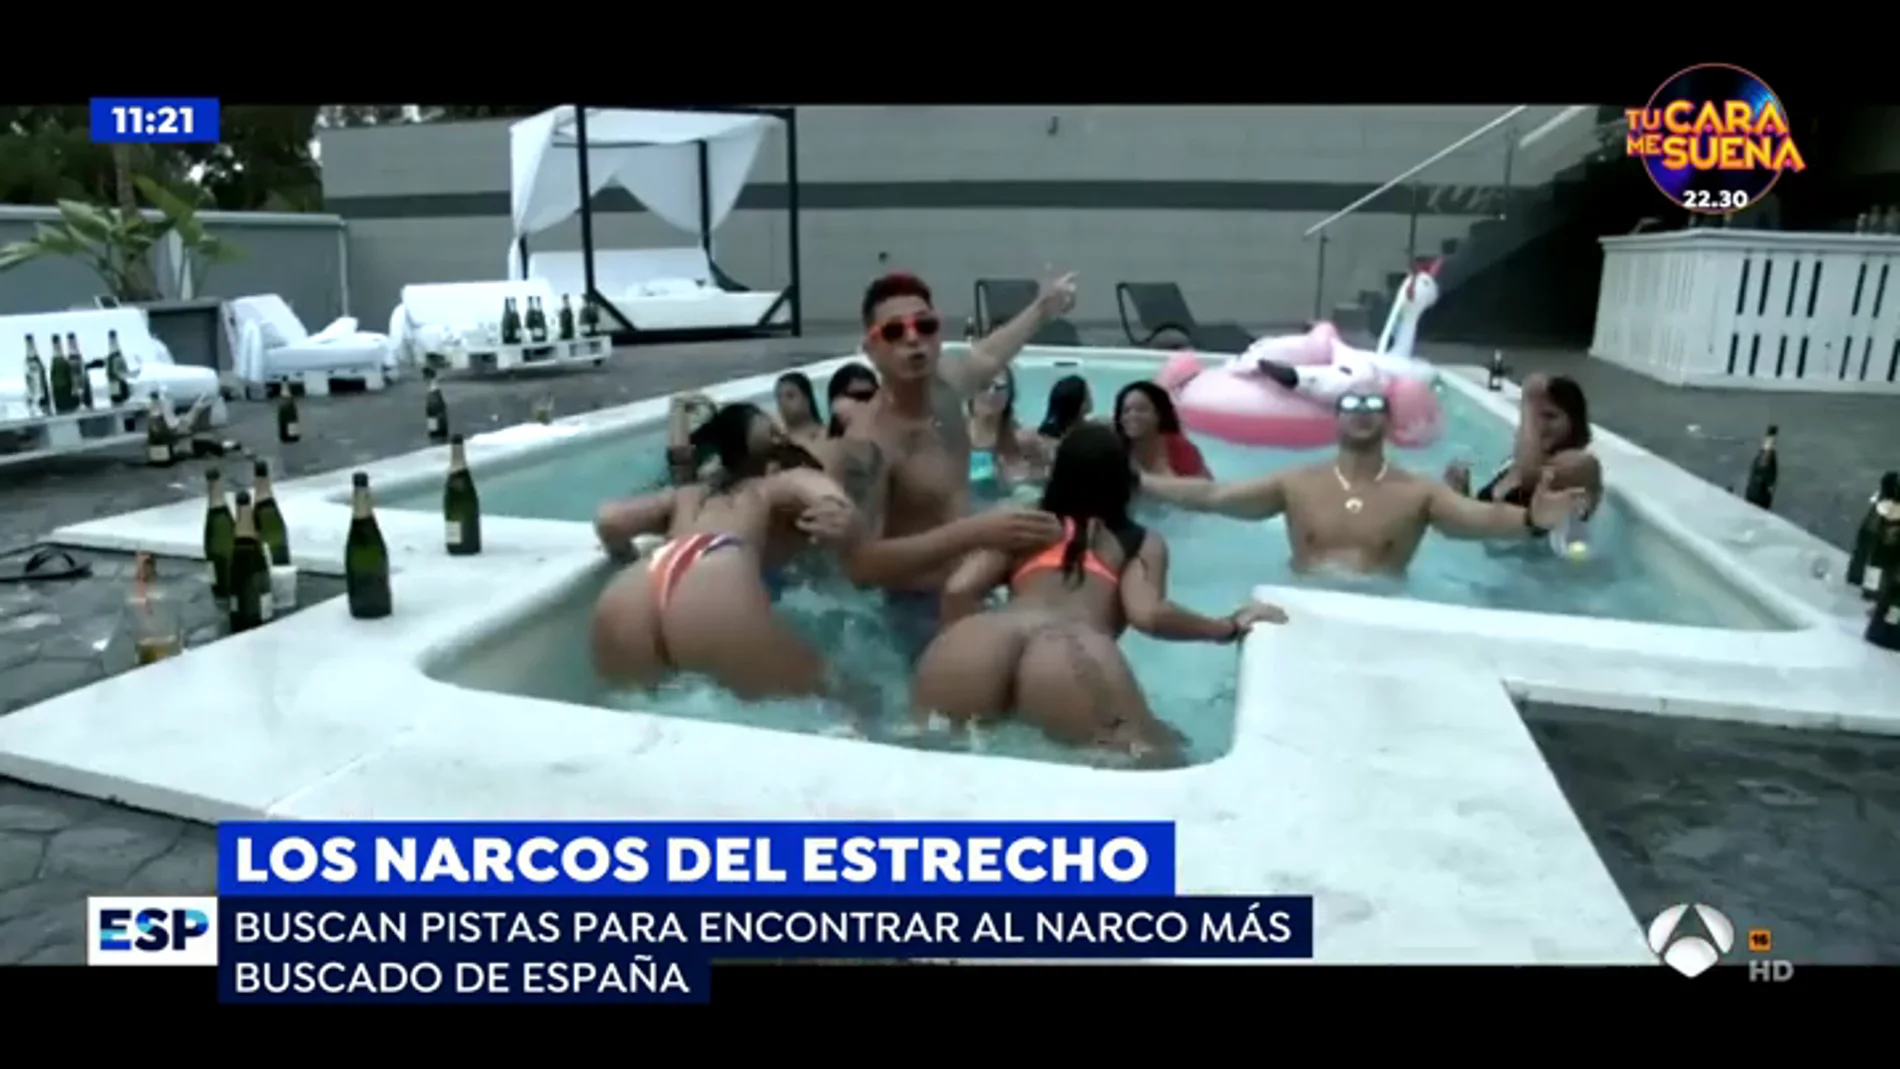 Chicas ligeras de ropa en una cama redonda: el vídeoclip donde reaparece el narco más buscado de España